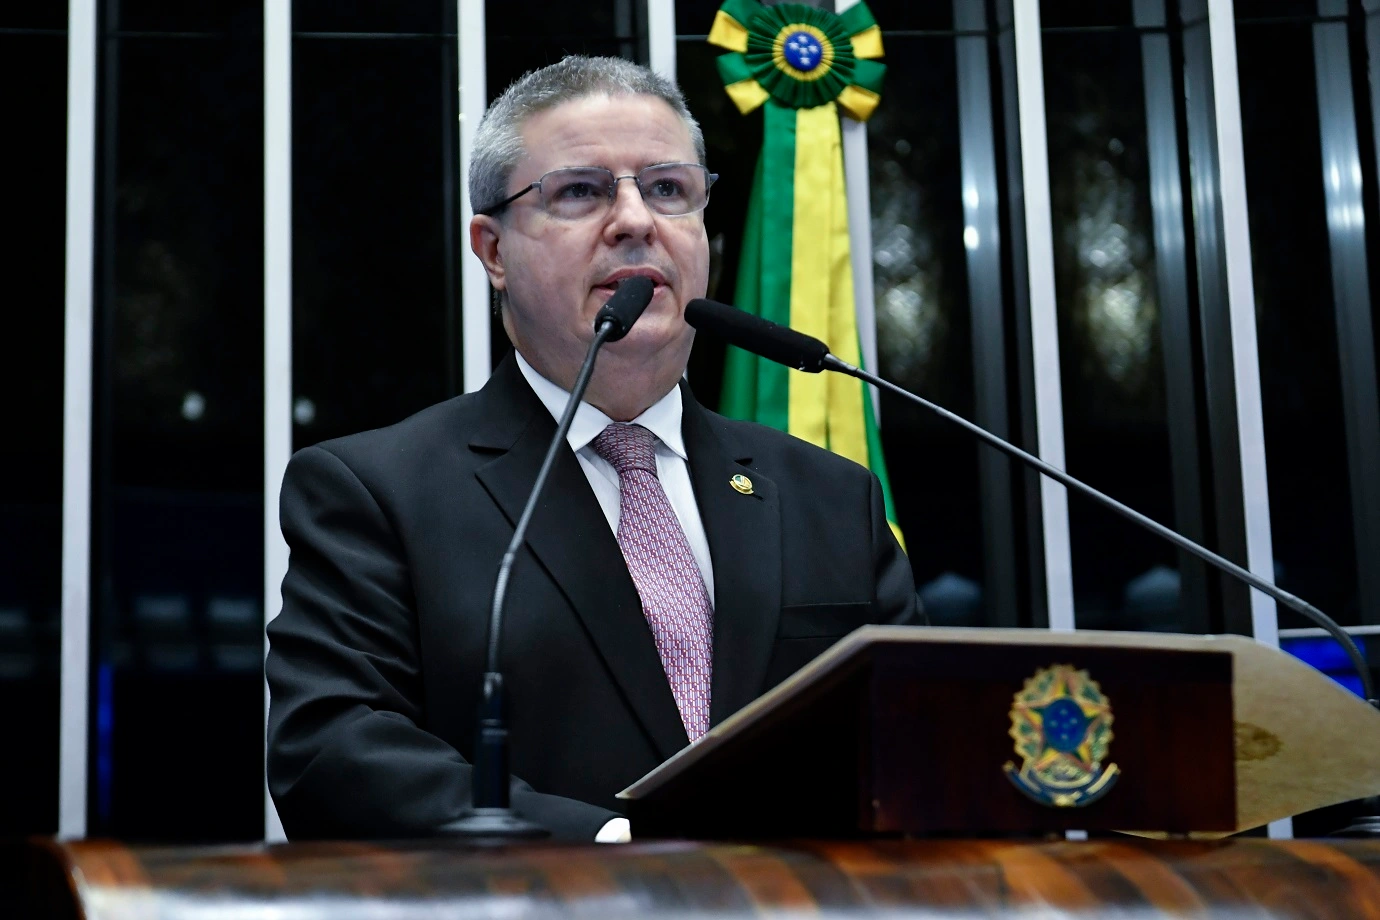 O ex-governador de Minas Gerais foi escolhido para ocupar uma vaga no TCU. Imagem: Reprodução